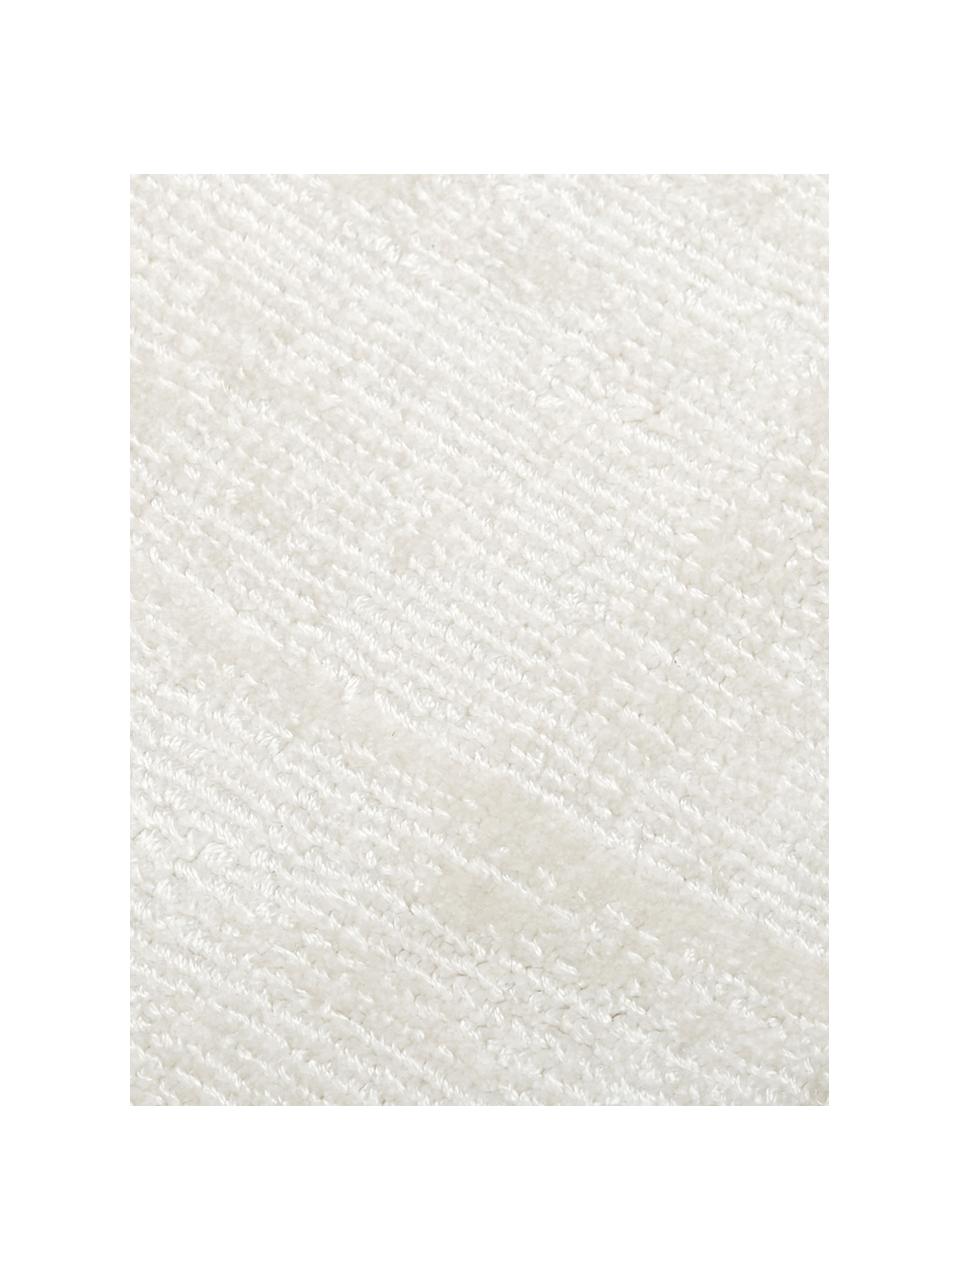 Tapis rond viscose tissé main blanc ivoire Jane, Blanc ivoire, Ø 250 cm (taille XL)